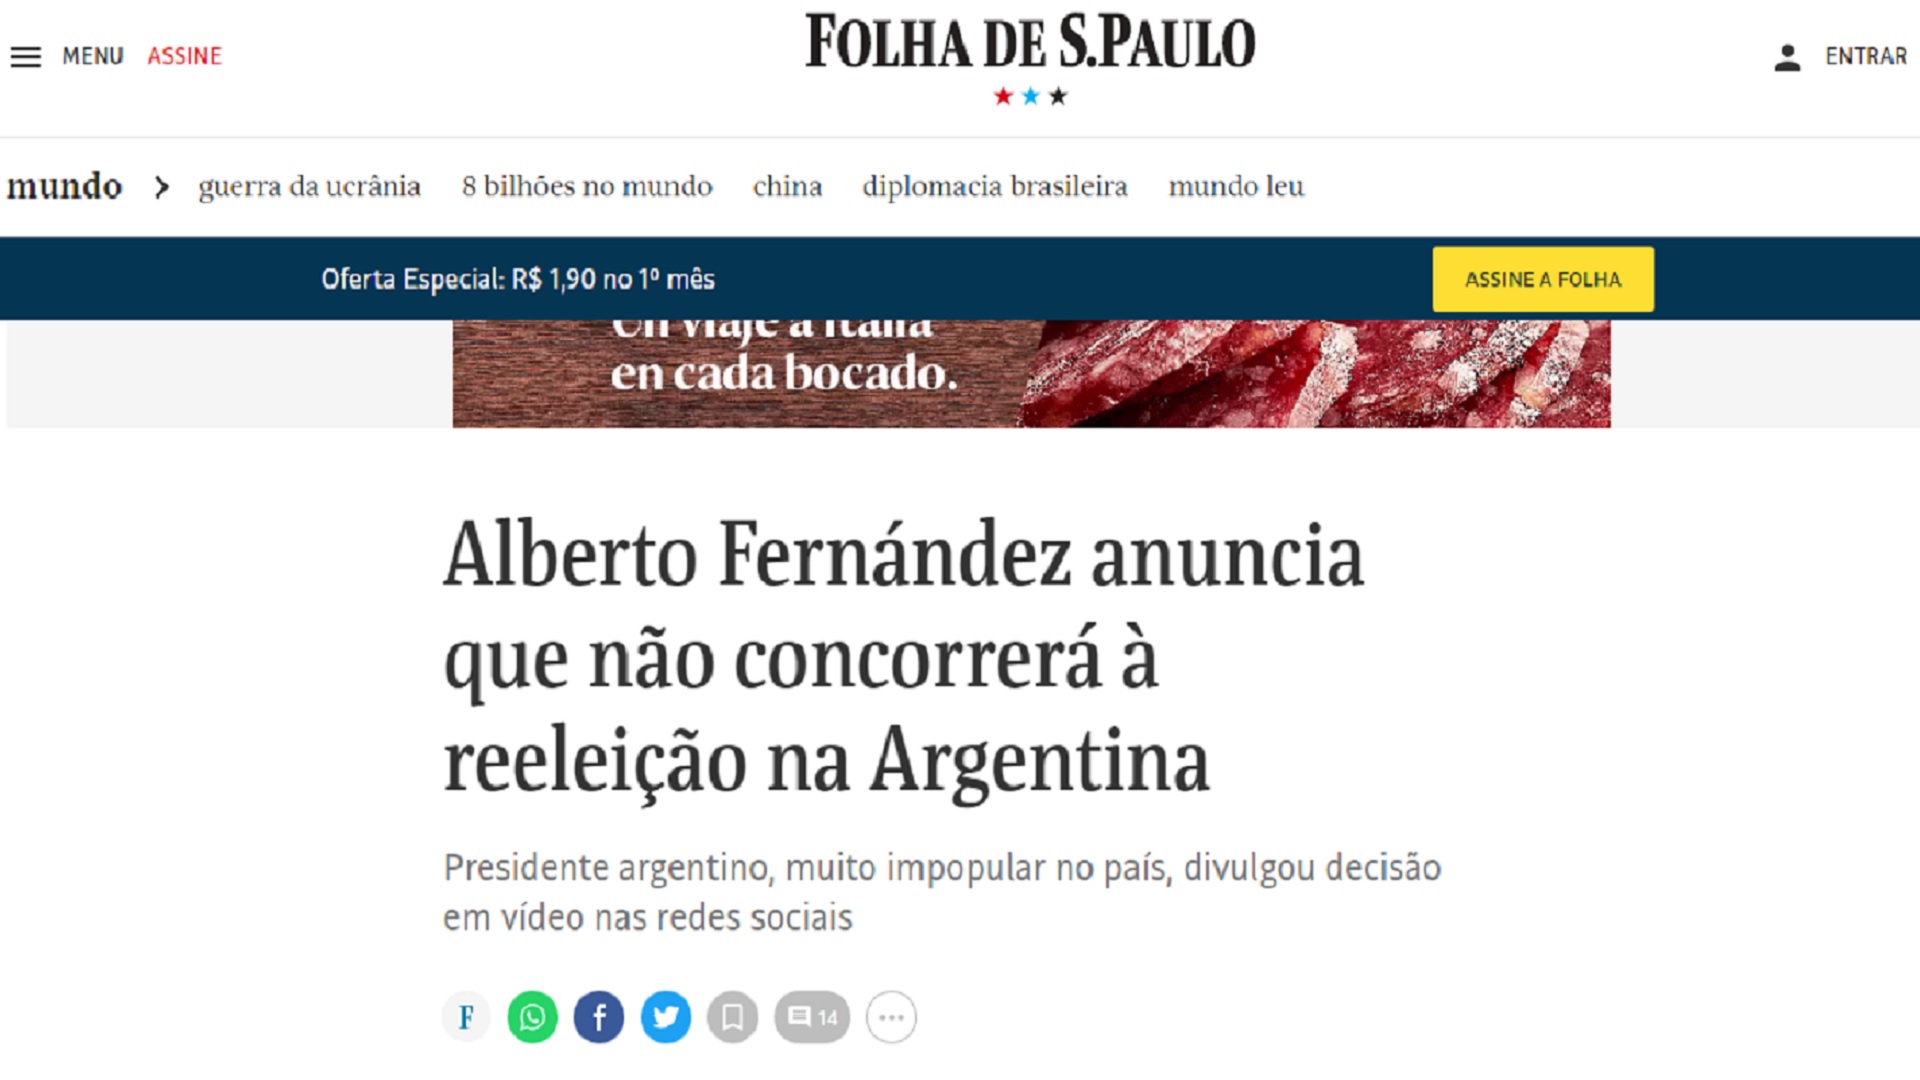 El diario brasileño destacó que Alberto Fernández es "muy impopular"